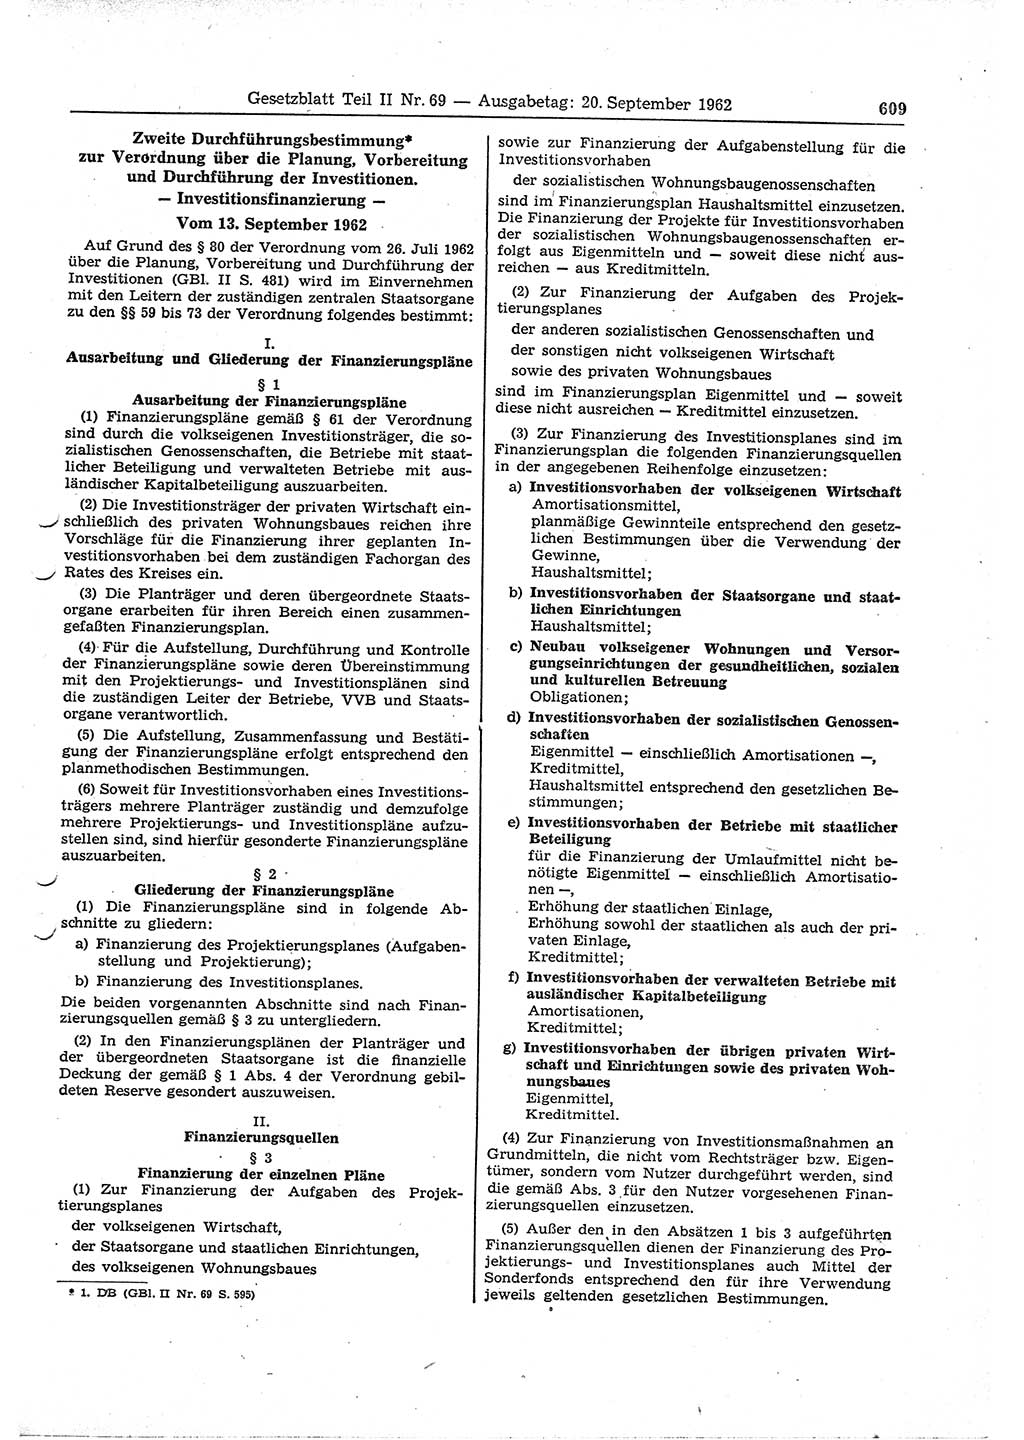 Gesetzblatt (GBl.) der Deutschen Demokratischen Republik (DDR) Teil ⅠⅠ 1962, Seite 609 (GBl. DDR ⅠⅠ 1962, S. 609)